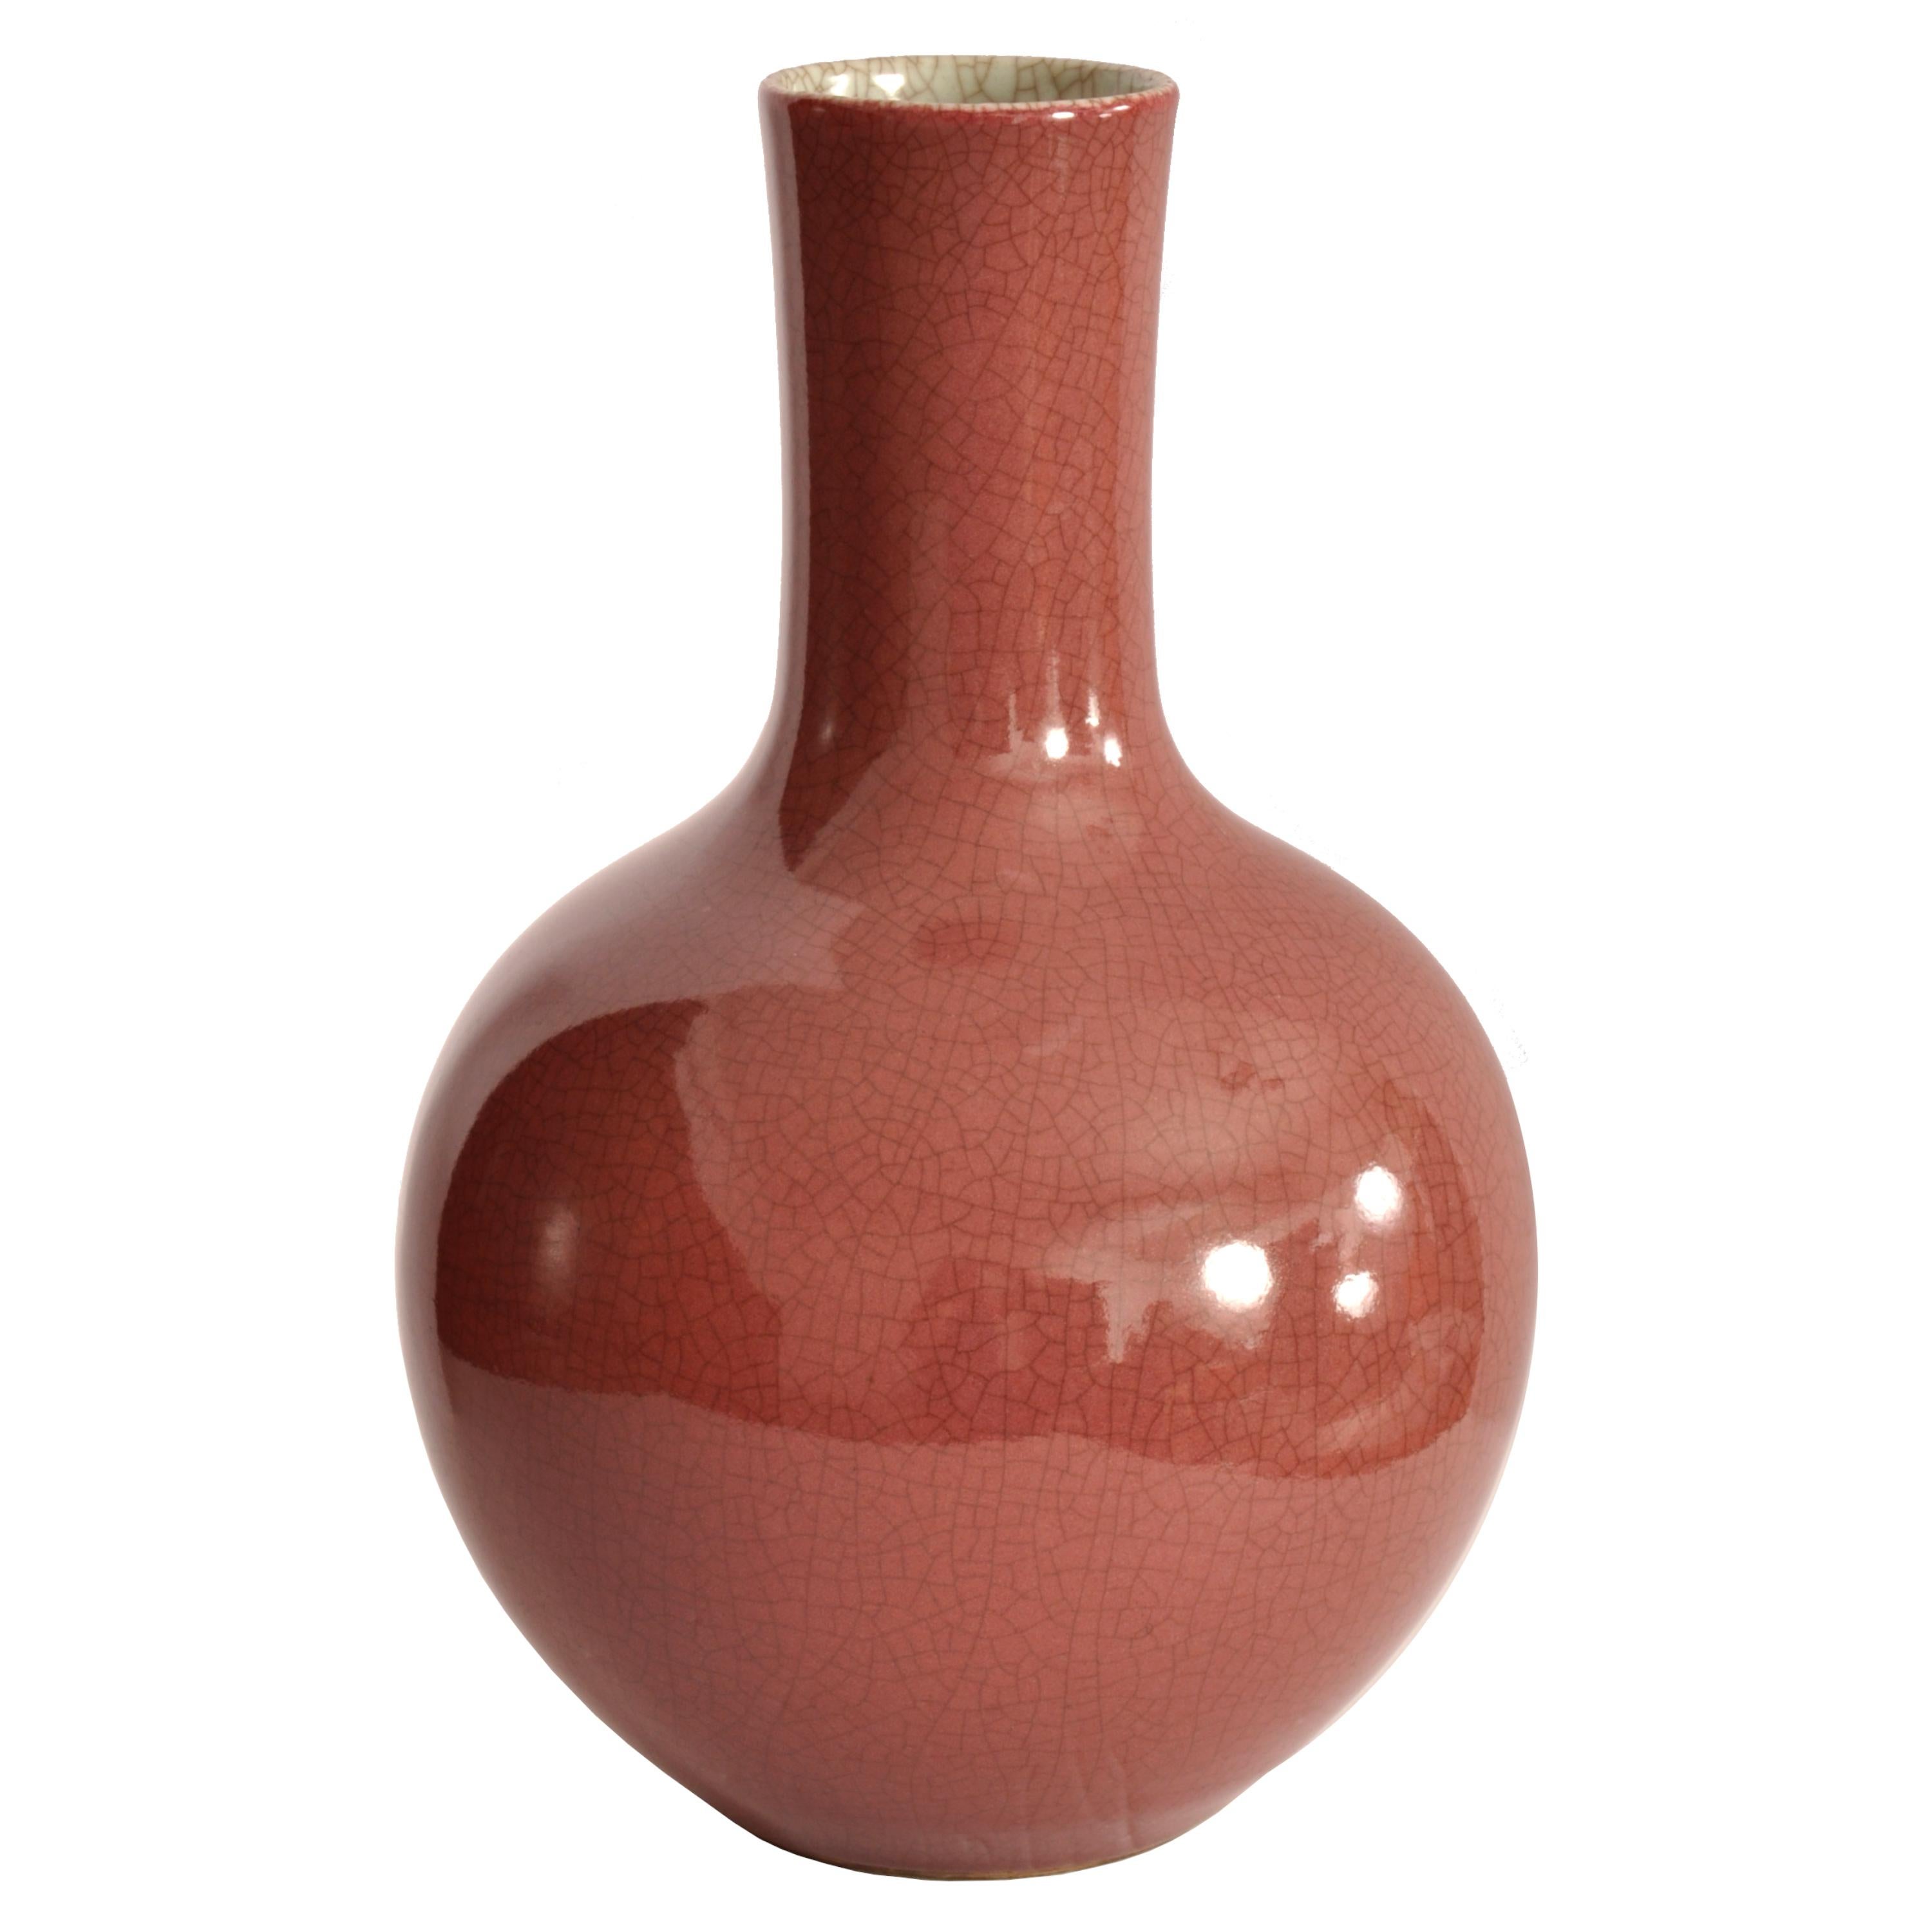 Antike chinesische Flaschenvase der Qing-Dynastie (1644-1911) aus dem späten 19.
Die Vase ist außen mit einer roten Craquelé-Glasur und innen mit einer cremefarbenen Craquelé-Glasur versehen. Die Vase hat die Form einer Flasche mit einem großen,